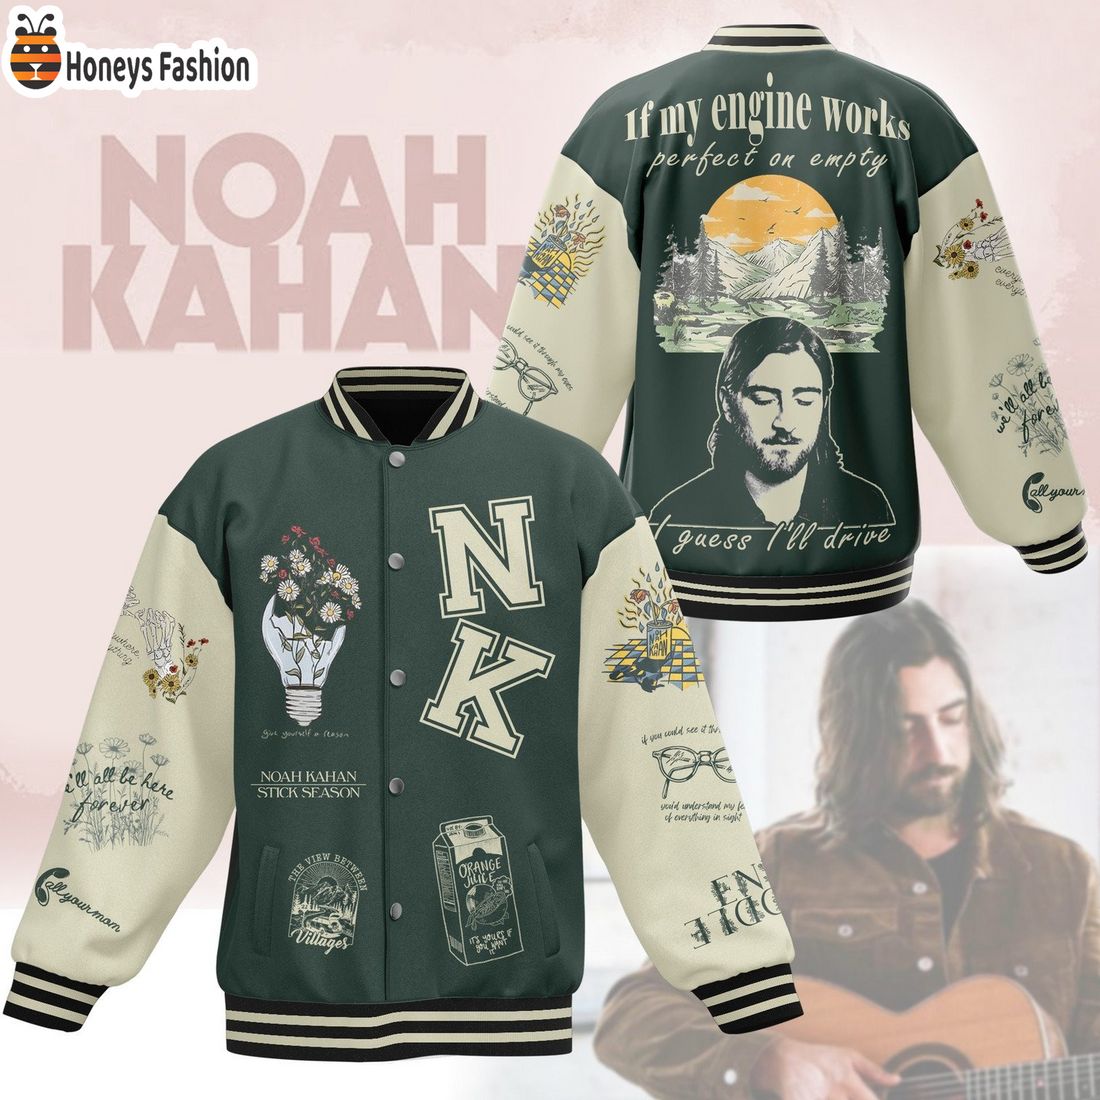 Noah Kahan growing sideways lyrics baseball jacket